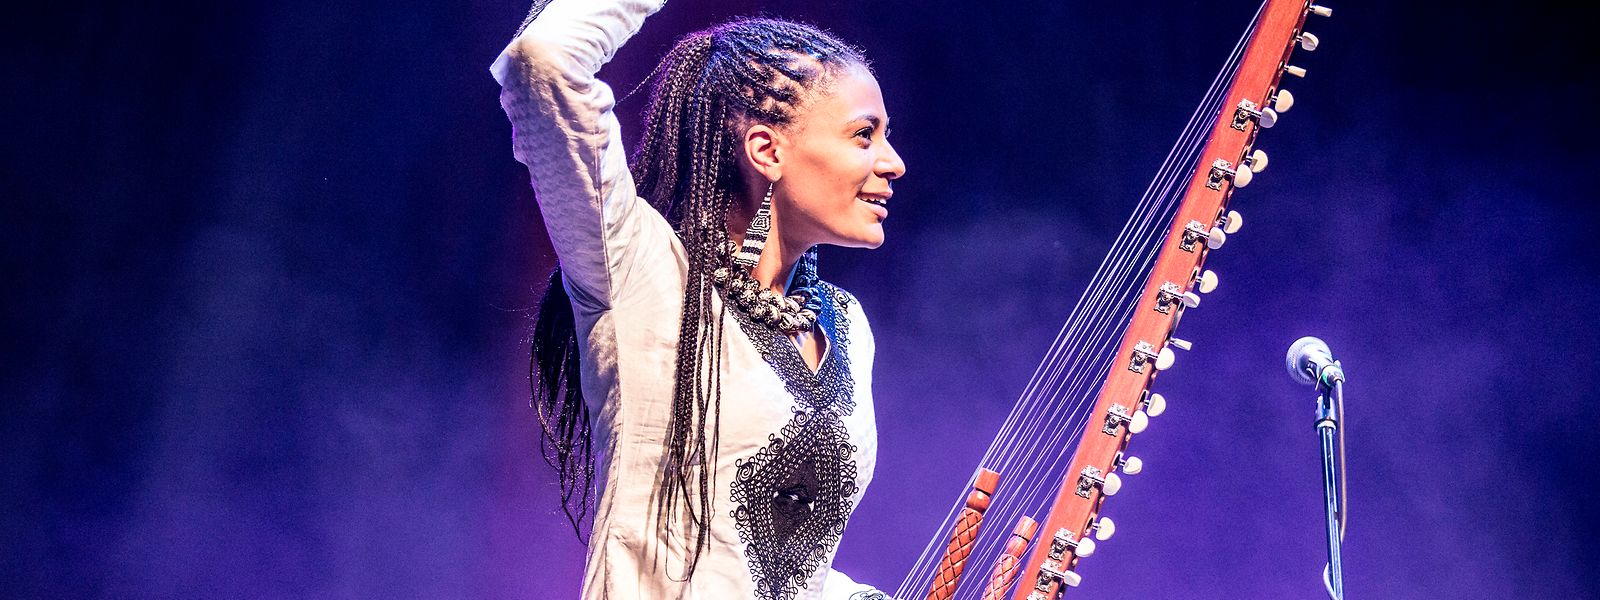 Die südafrikanische Sängerin und Komponistin Sona Jobarteh tritt am 14. Januar 2023 im Cube 521 auf. 